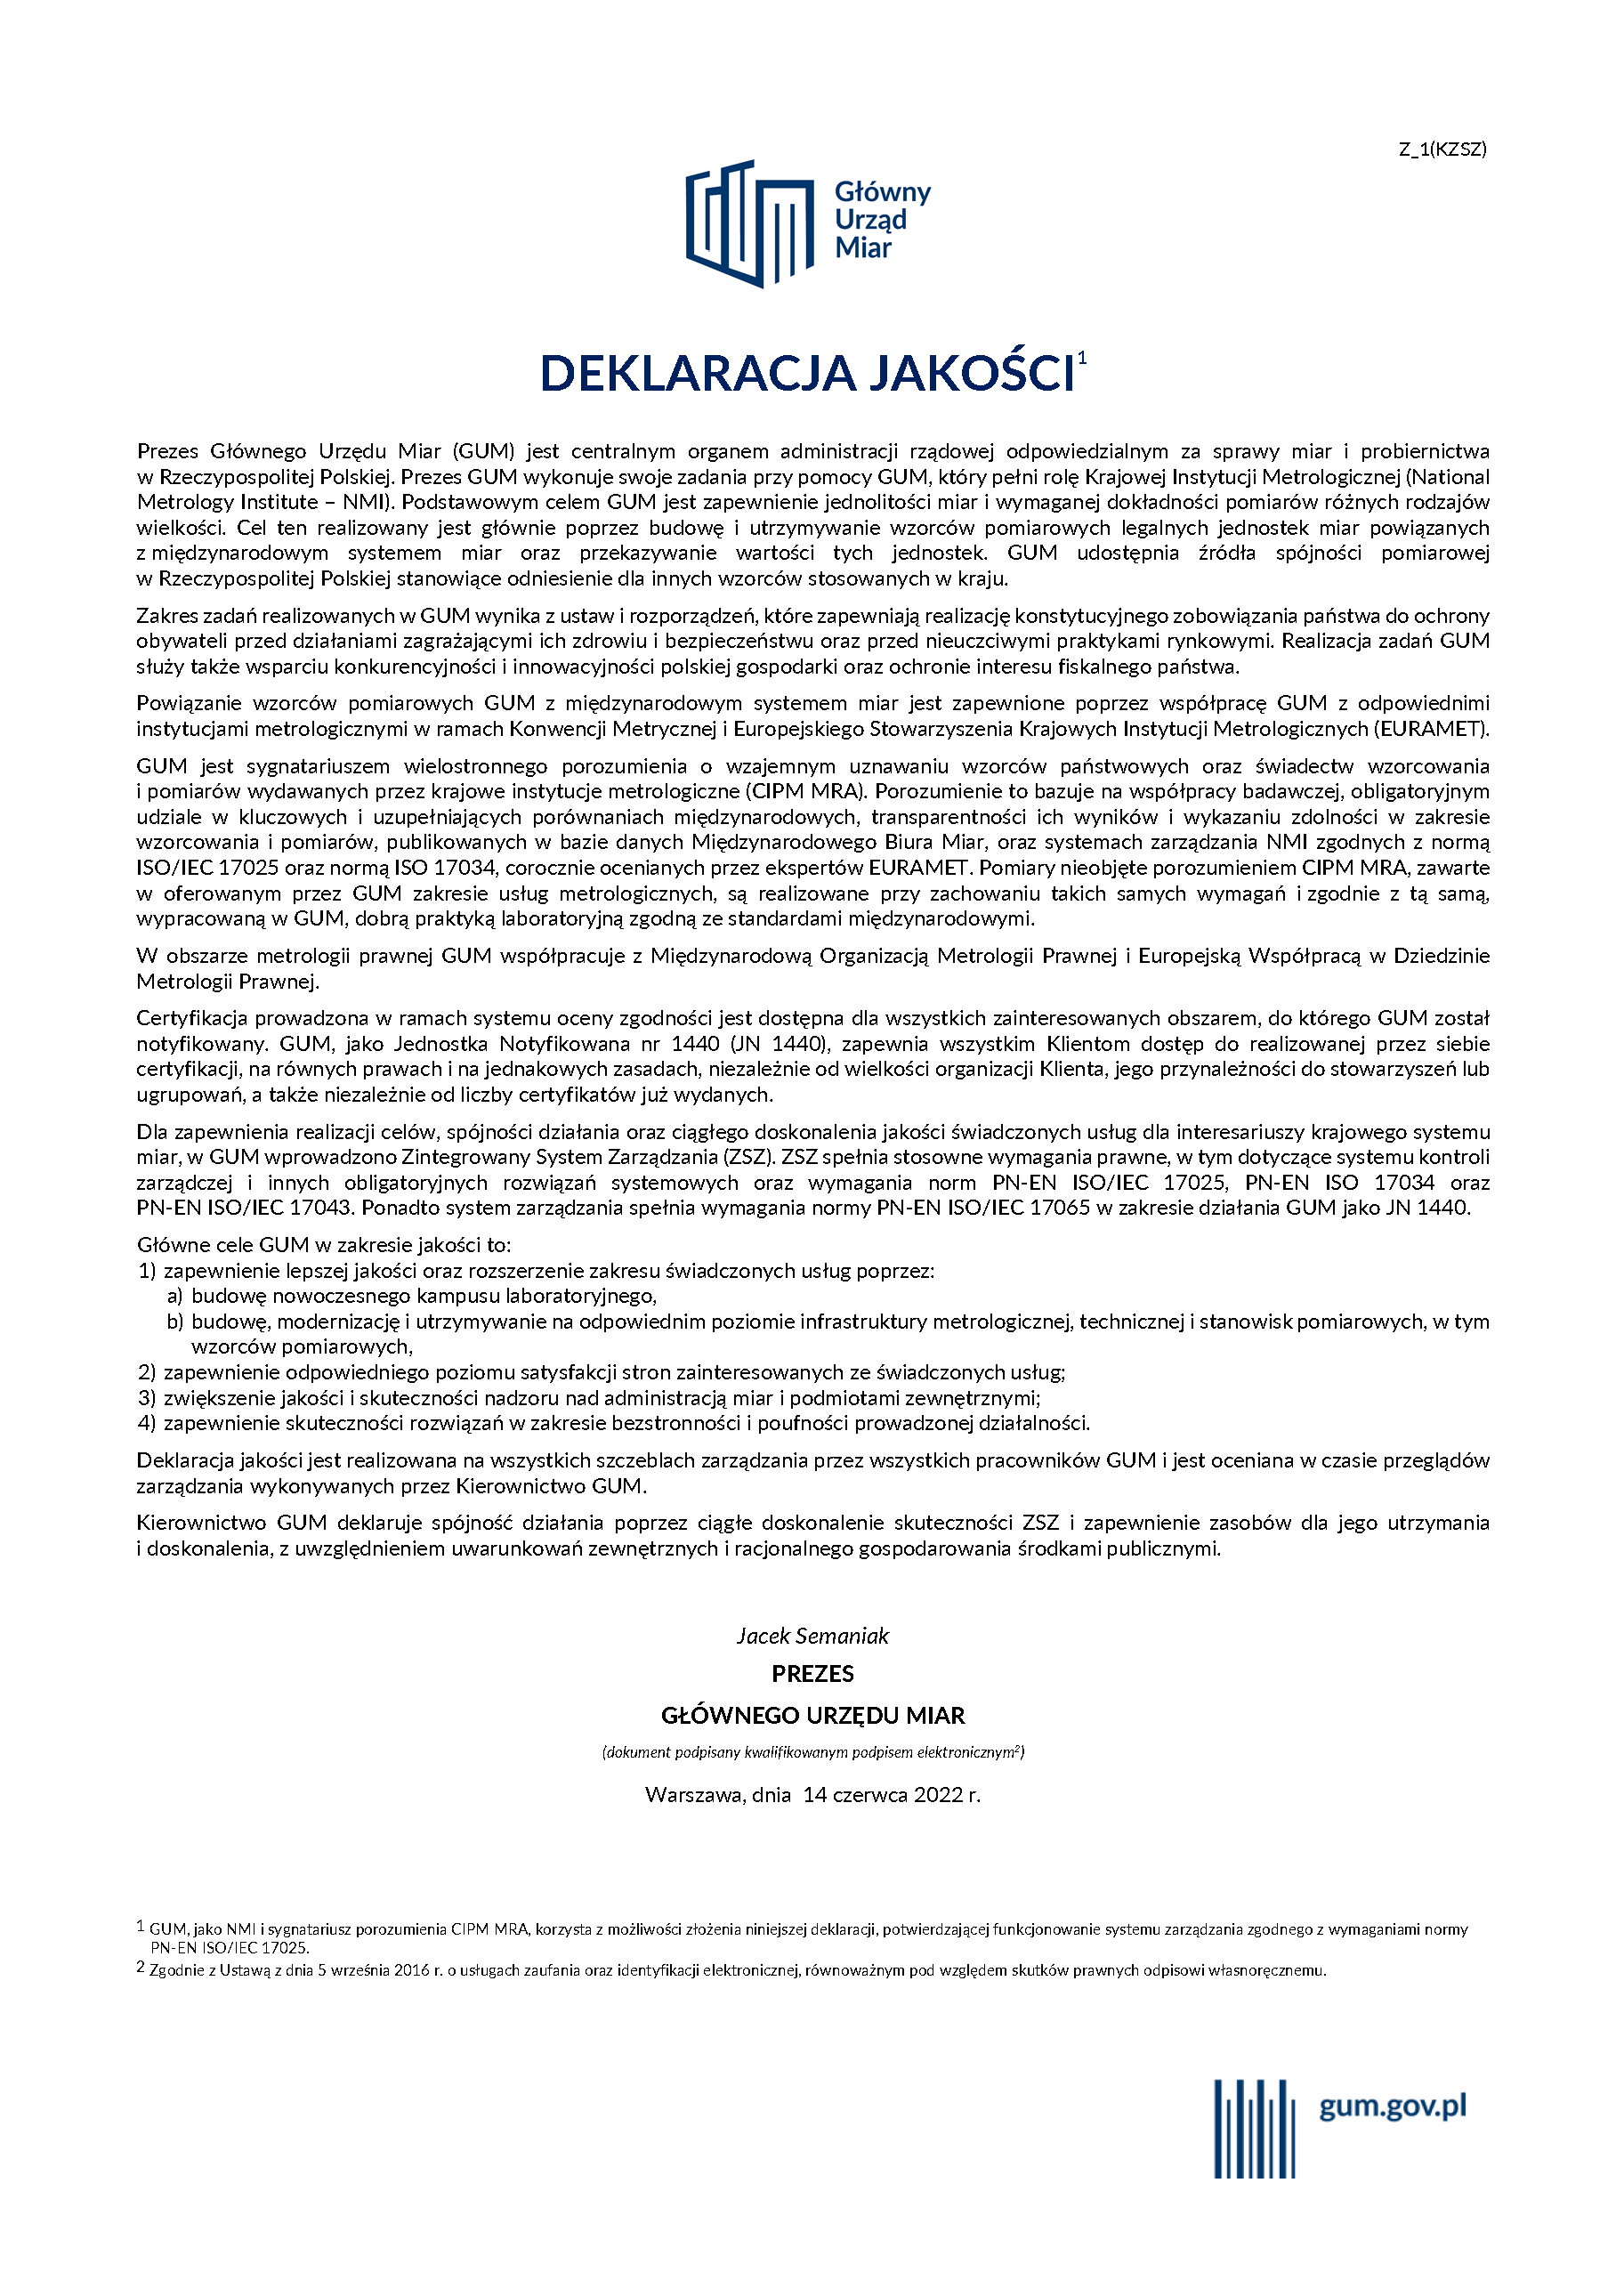 Deklaracja jakości - podpisany przez Prezesa GUM dokument. Pod zdjęcie podlinkowany jest pdf z dostępną wersją.